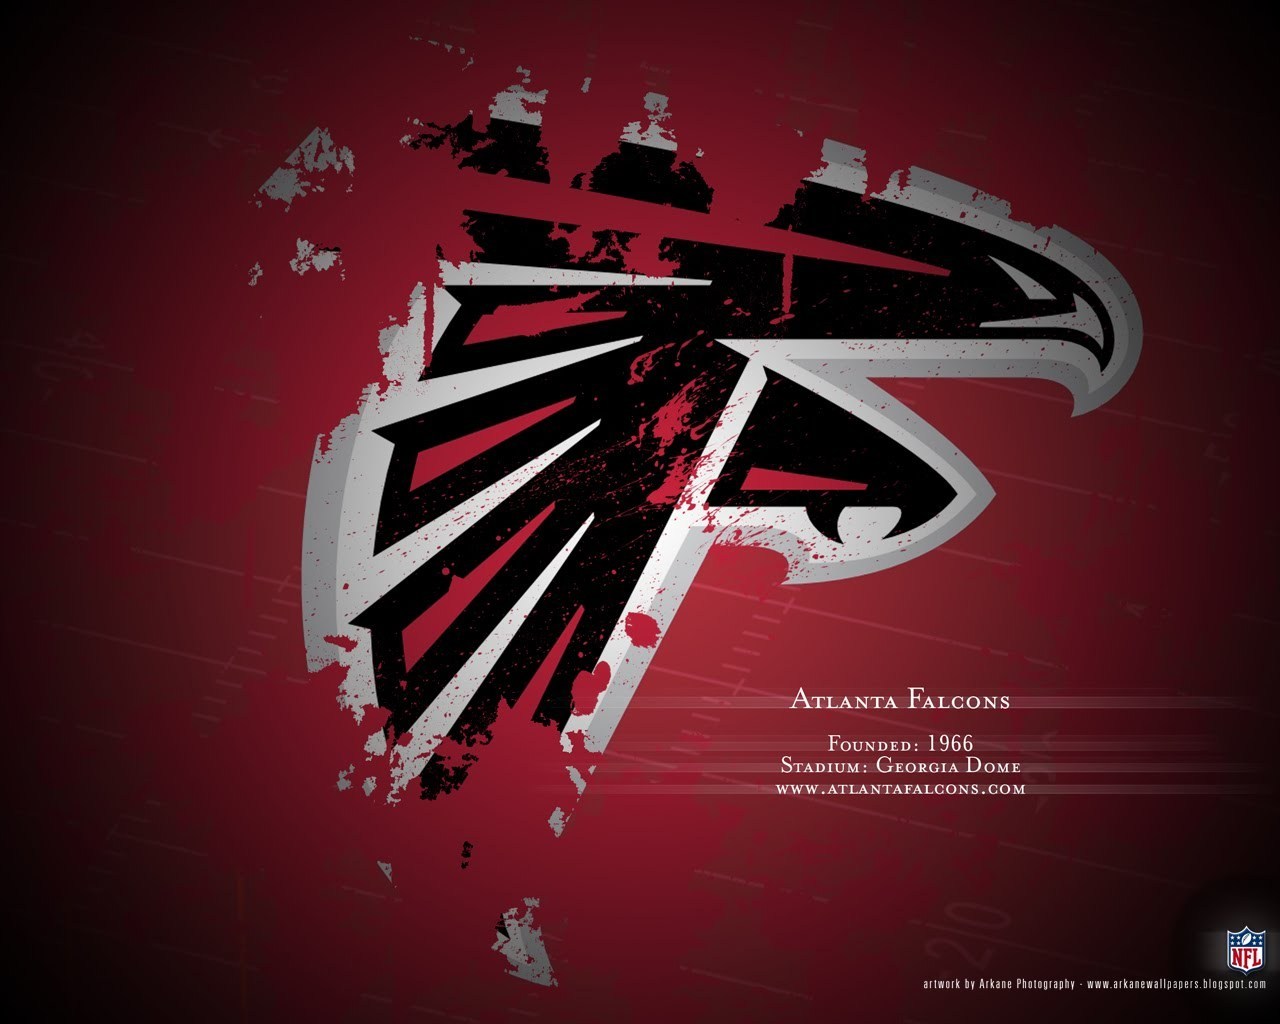 Atlanta Falcons Image HD Wallpaper And Background